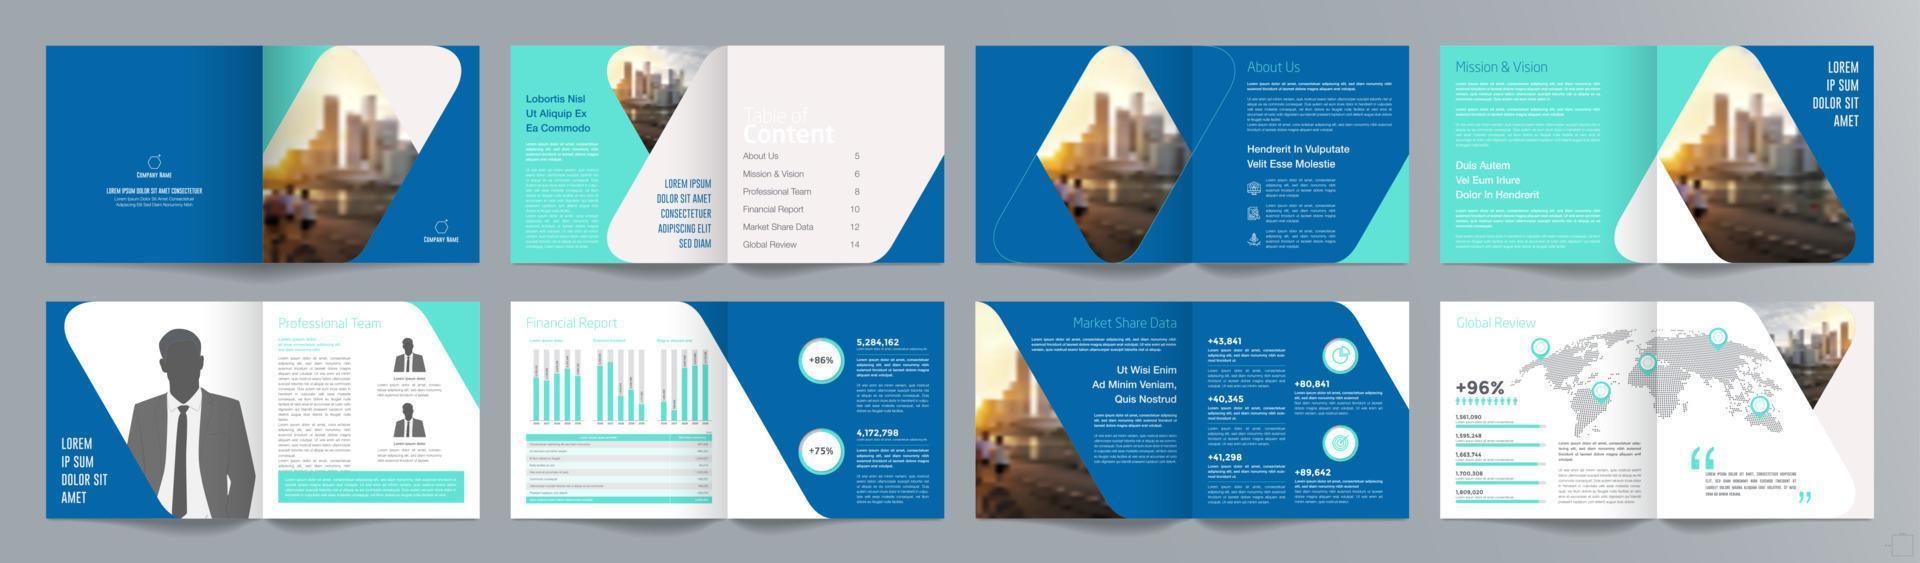 plantilla de folleto de guía de presentación de negocios corporativos, informe anual, plantilla de diseño de folleto de negocios geométrico plano minimalista de 16 páginas, tamaño cuadrado. vector